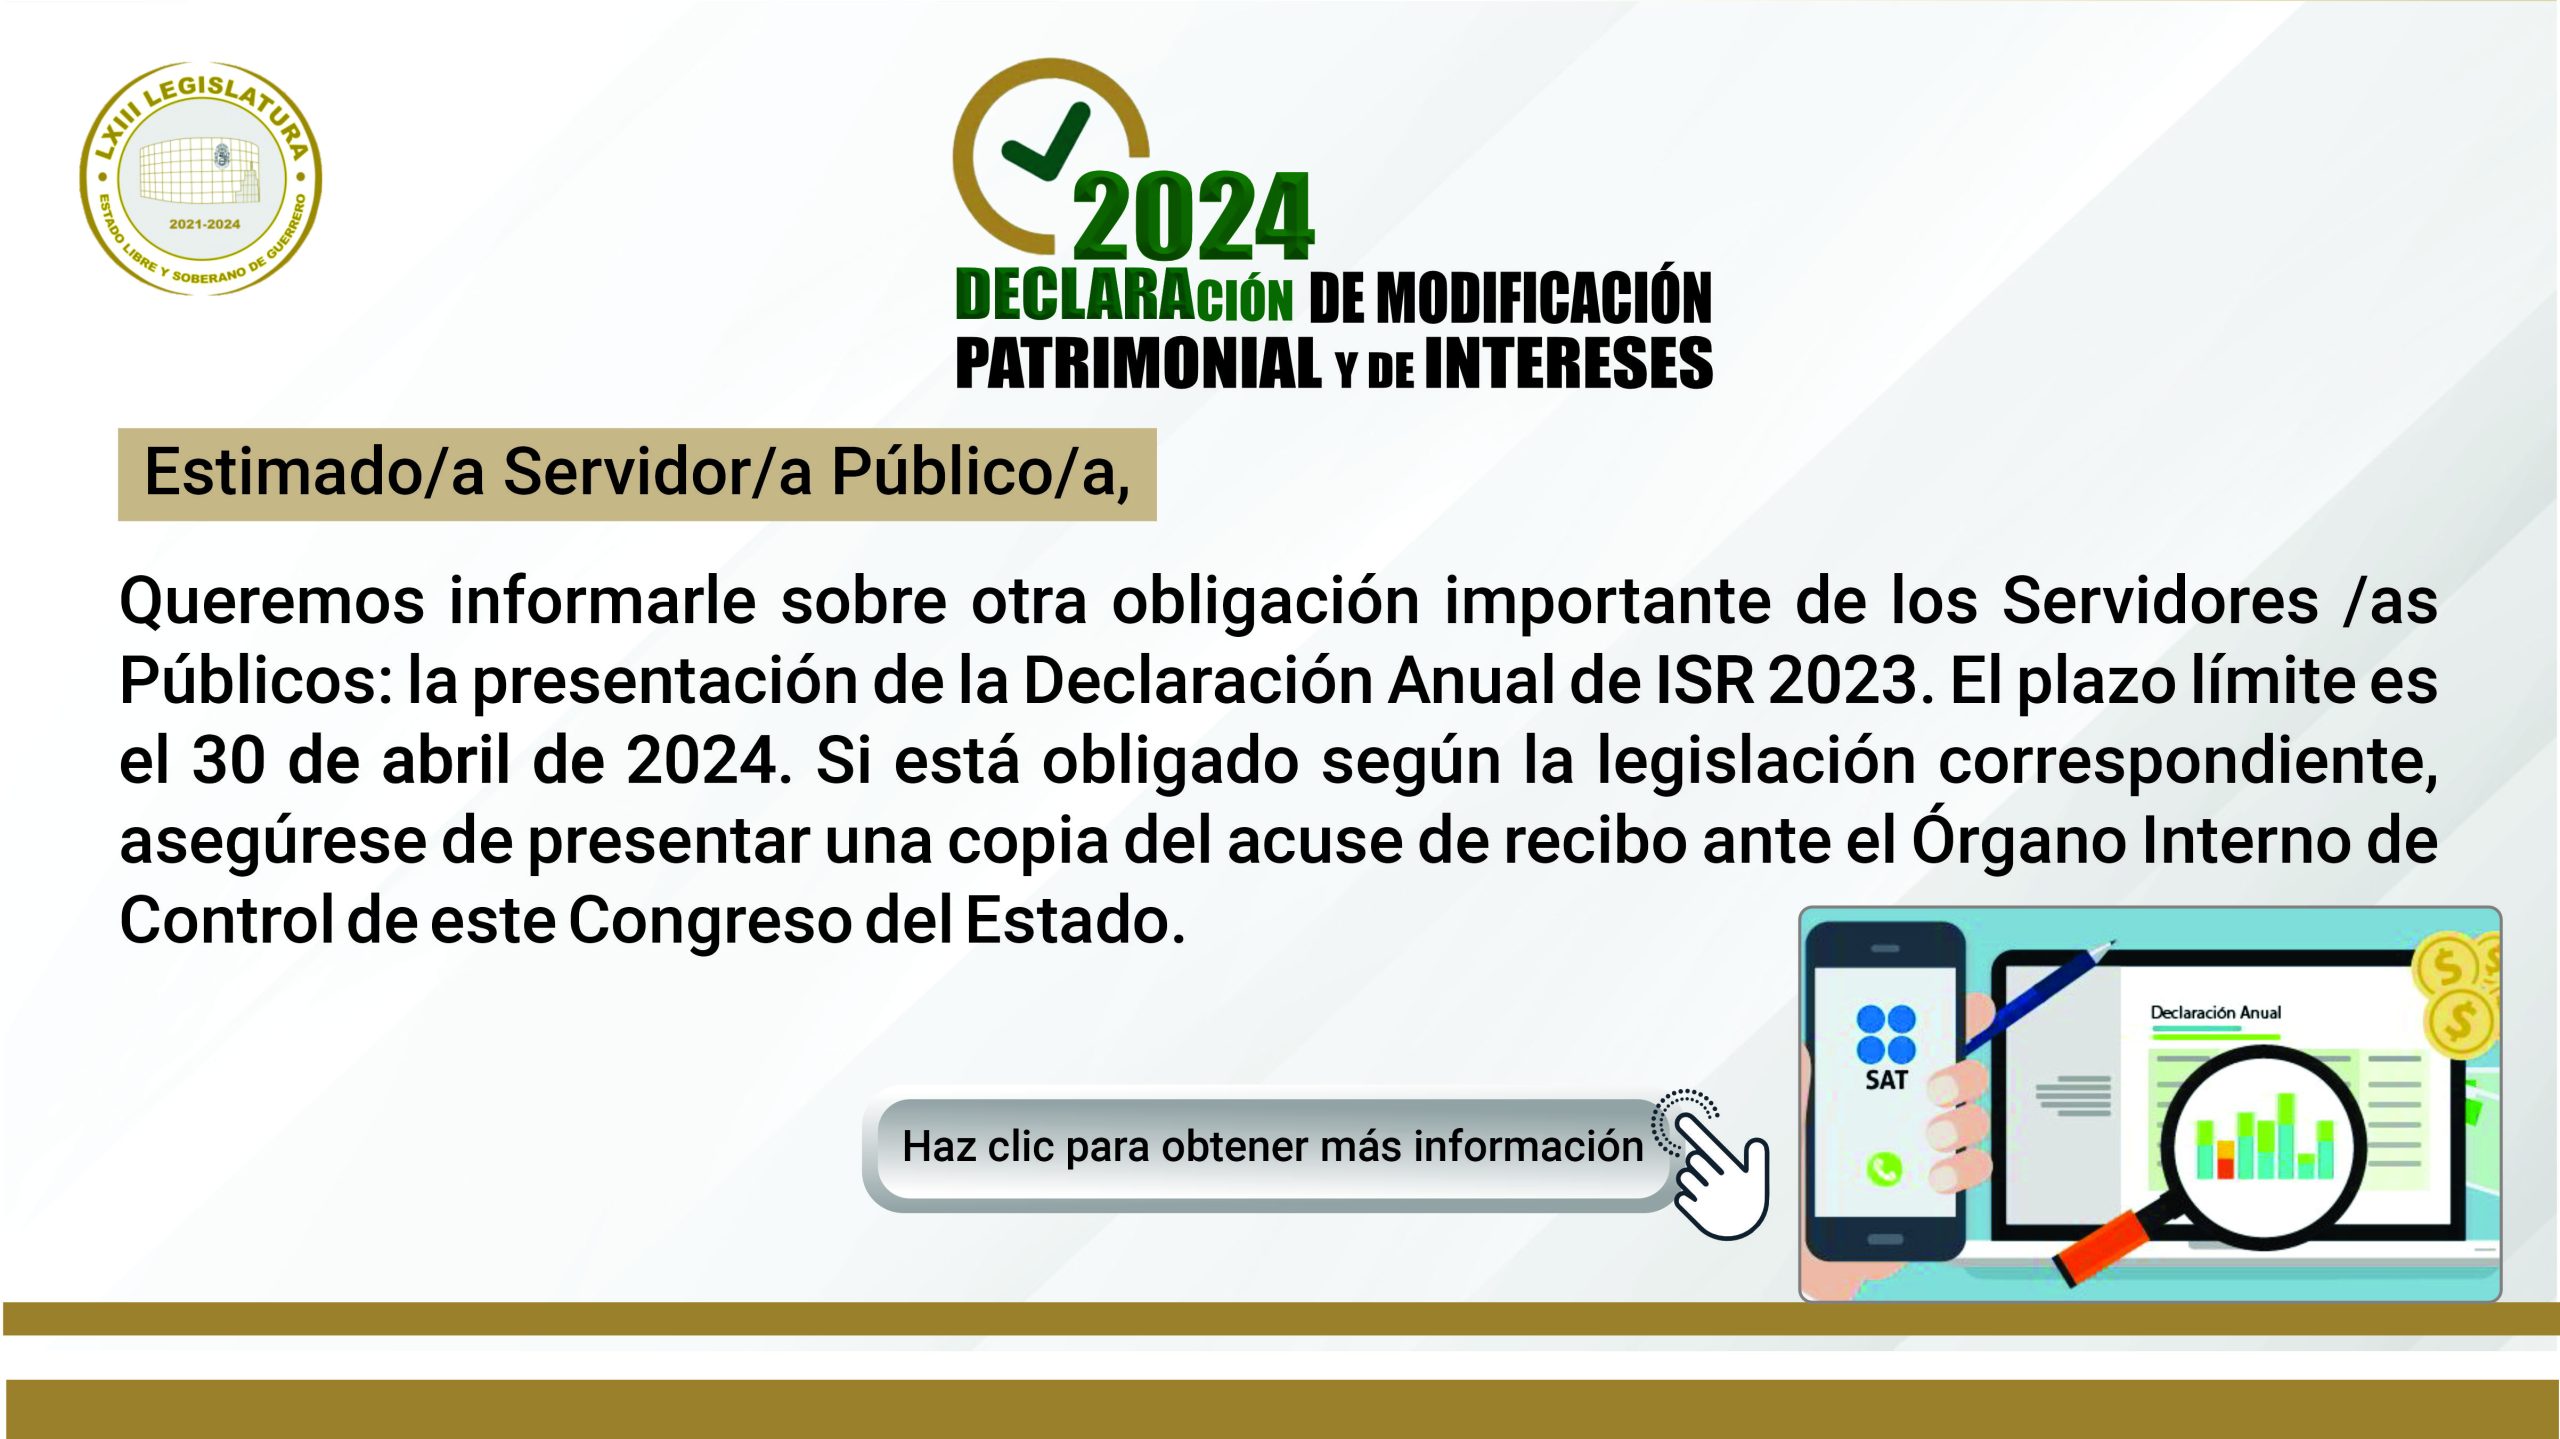 Presenta tu declaración anual de ISR 2023